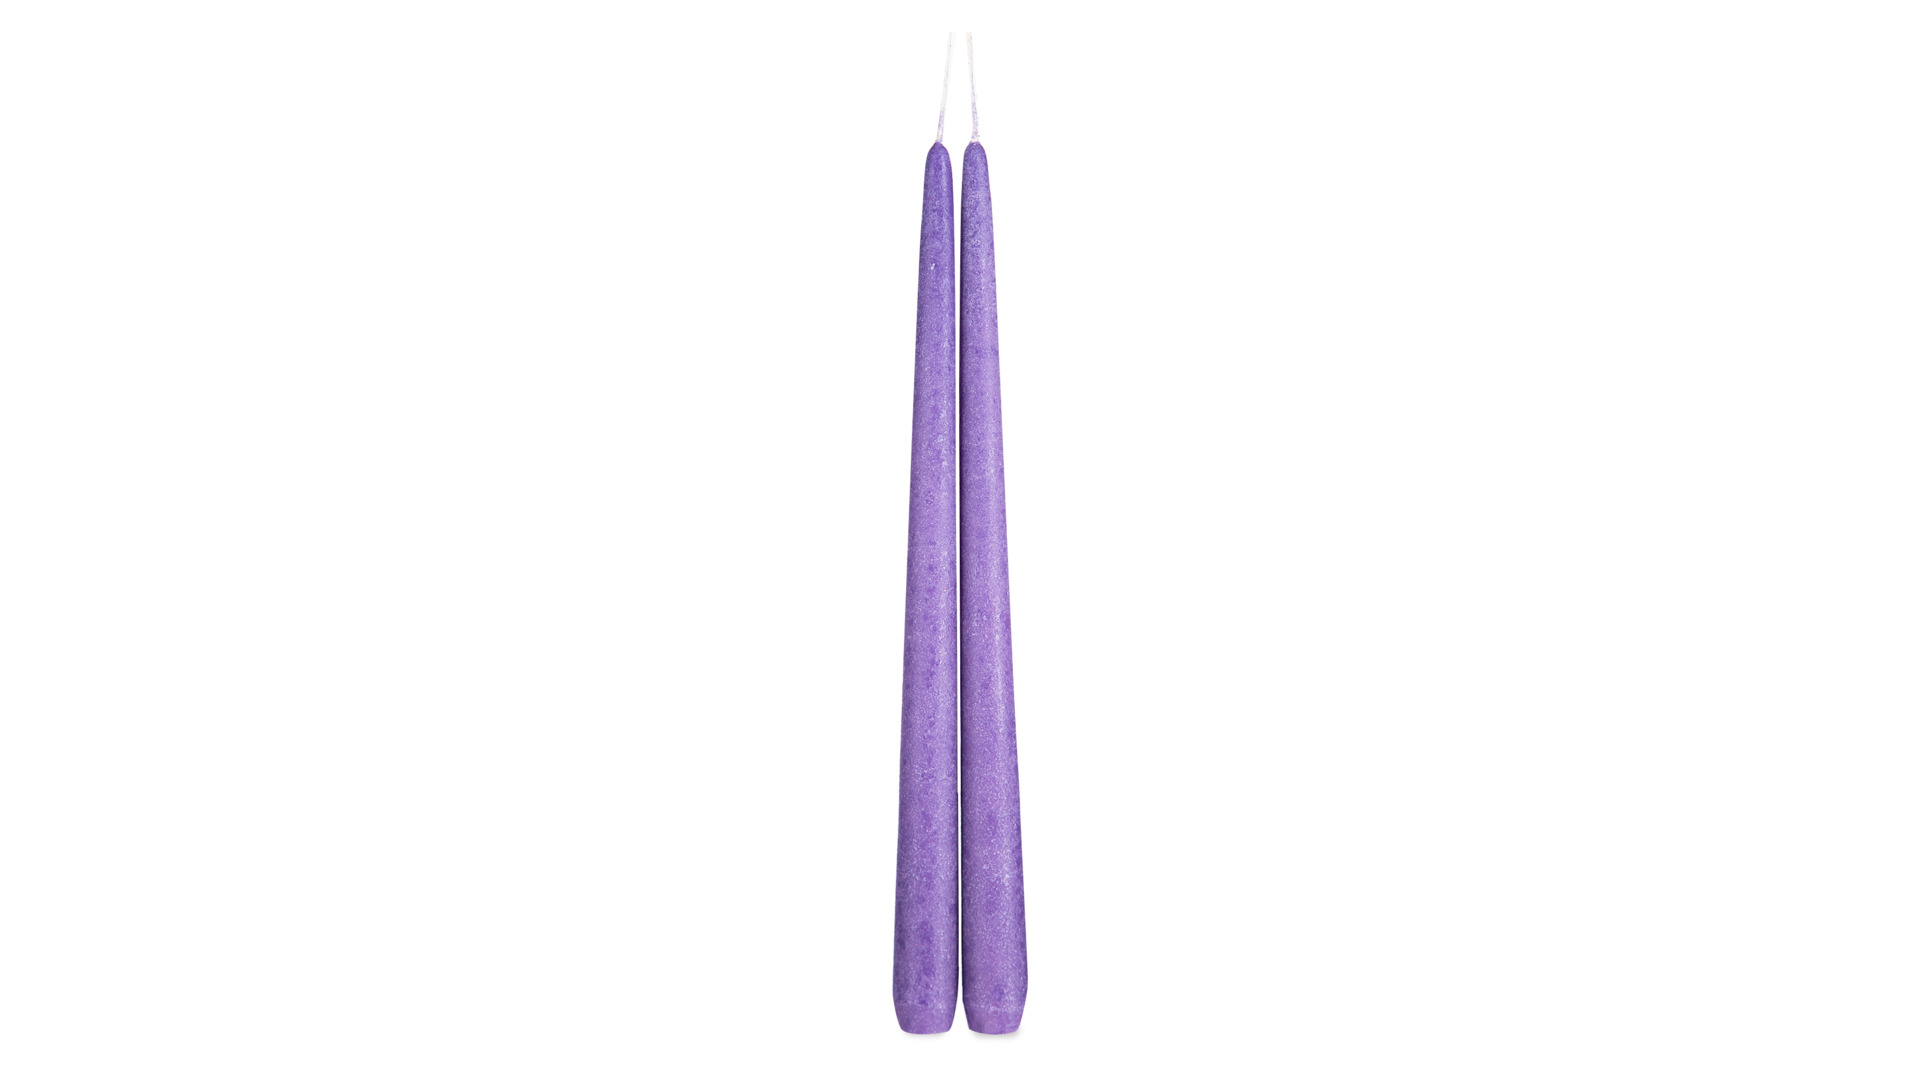 Набор свечей Luz your senses Рустик 30 см, 2 шт, фиолетовый